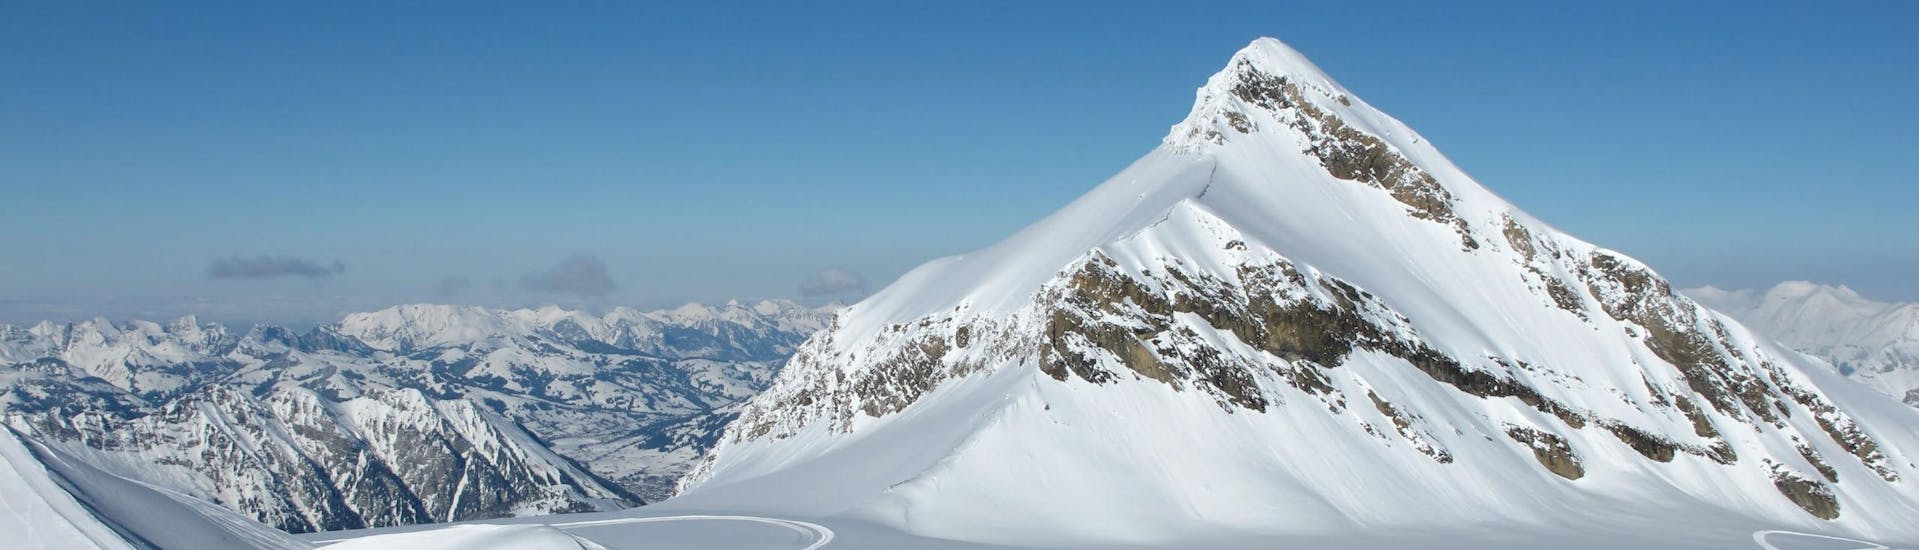 Ausblick über die schneebedeckten Bergspitzen des Skigebiets Les Diablerets, wo die örtlichen Skischulen ihre Skikurse ausführen. 